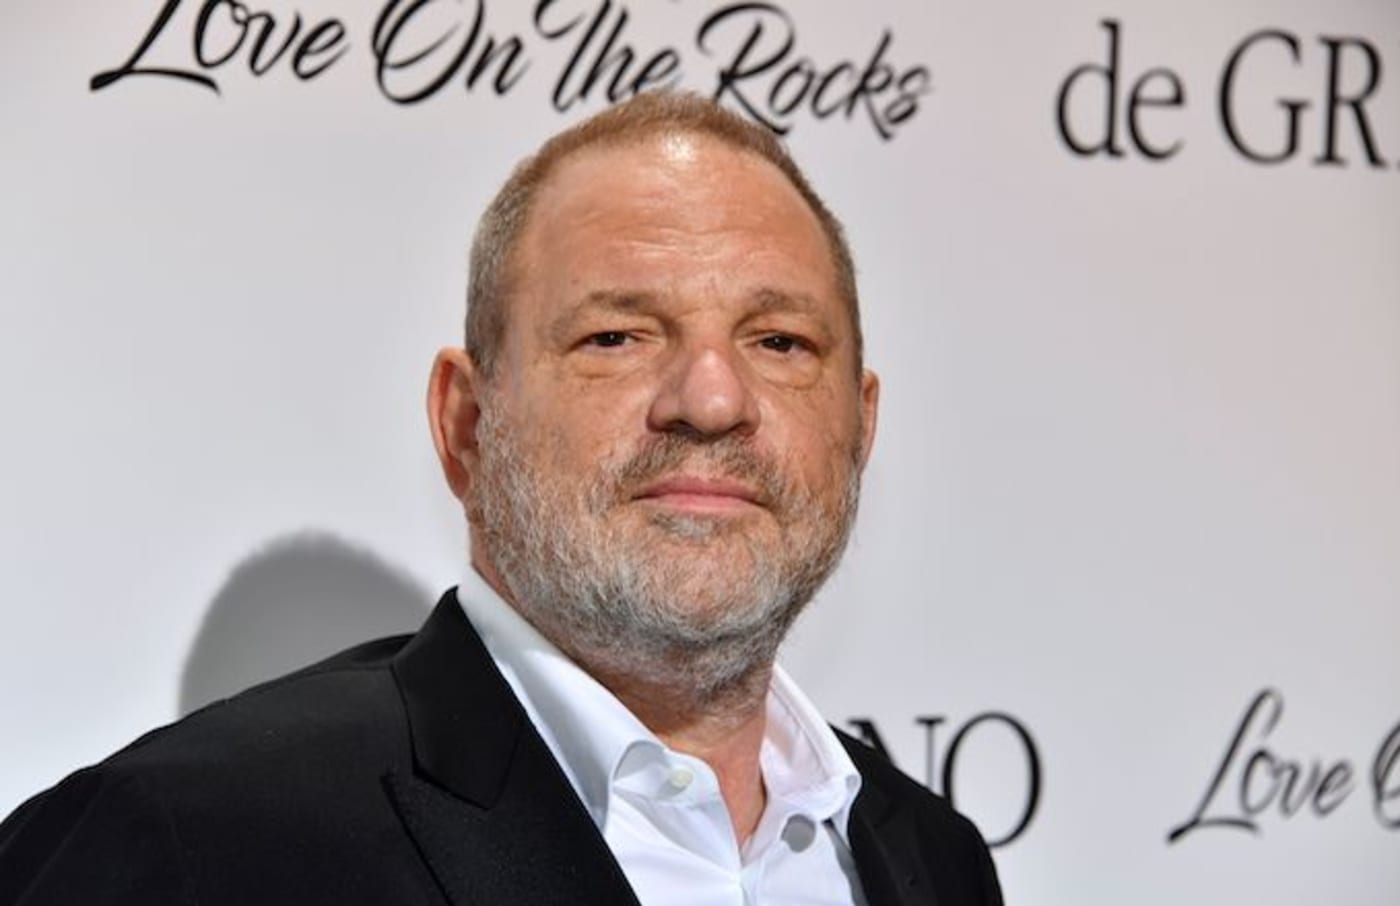 Sexual predator Harvey Weinstein